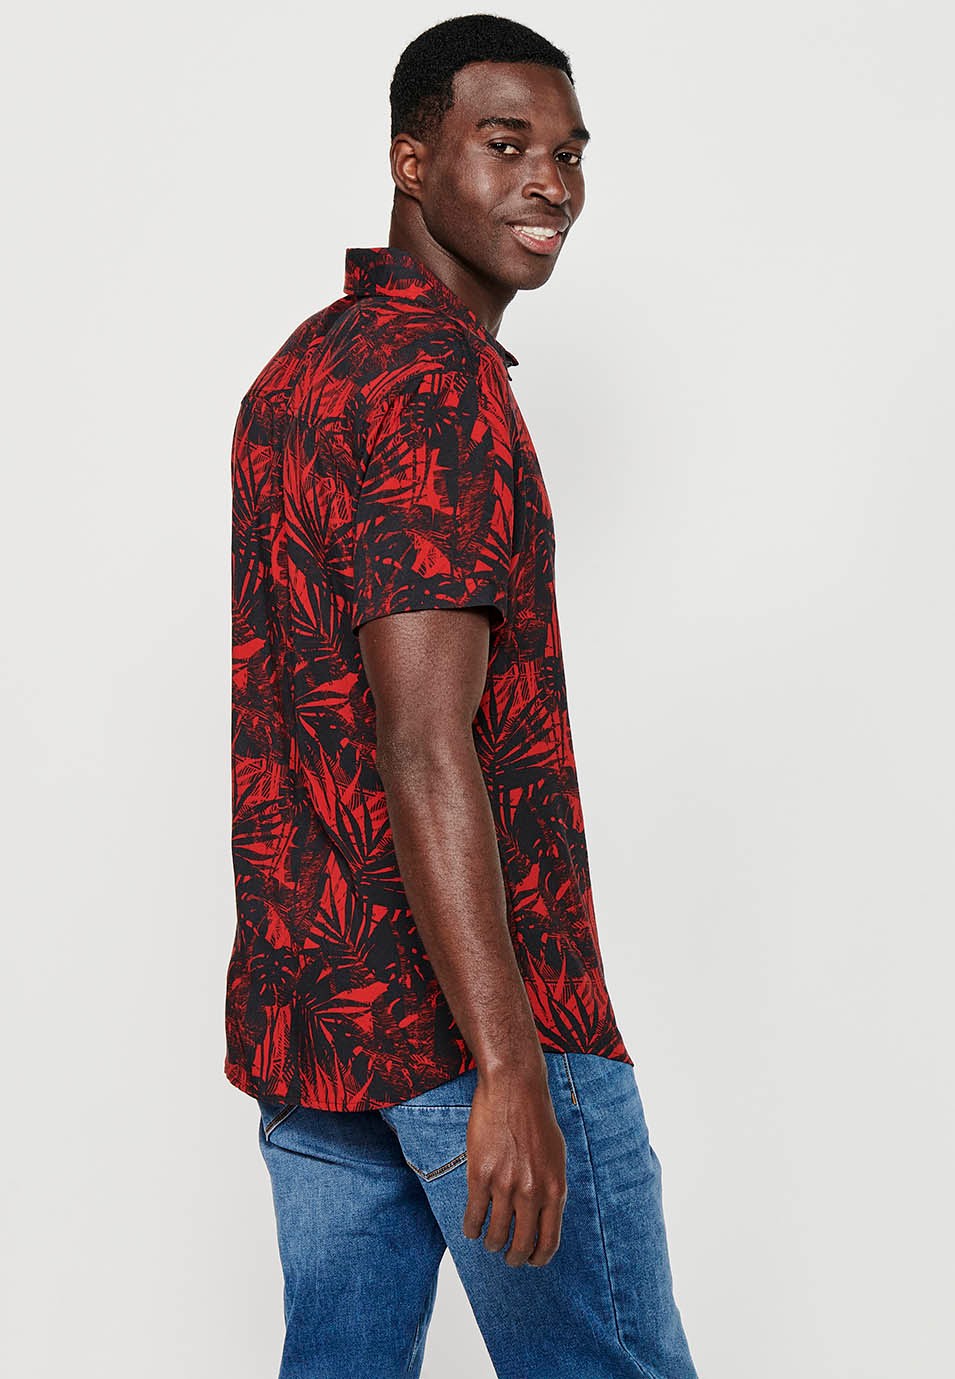 Chemise à manches courtes pour hommes, imprimé floral rouge, fermeture boutonnée sur le devant 7